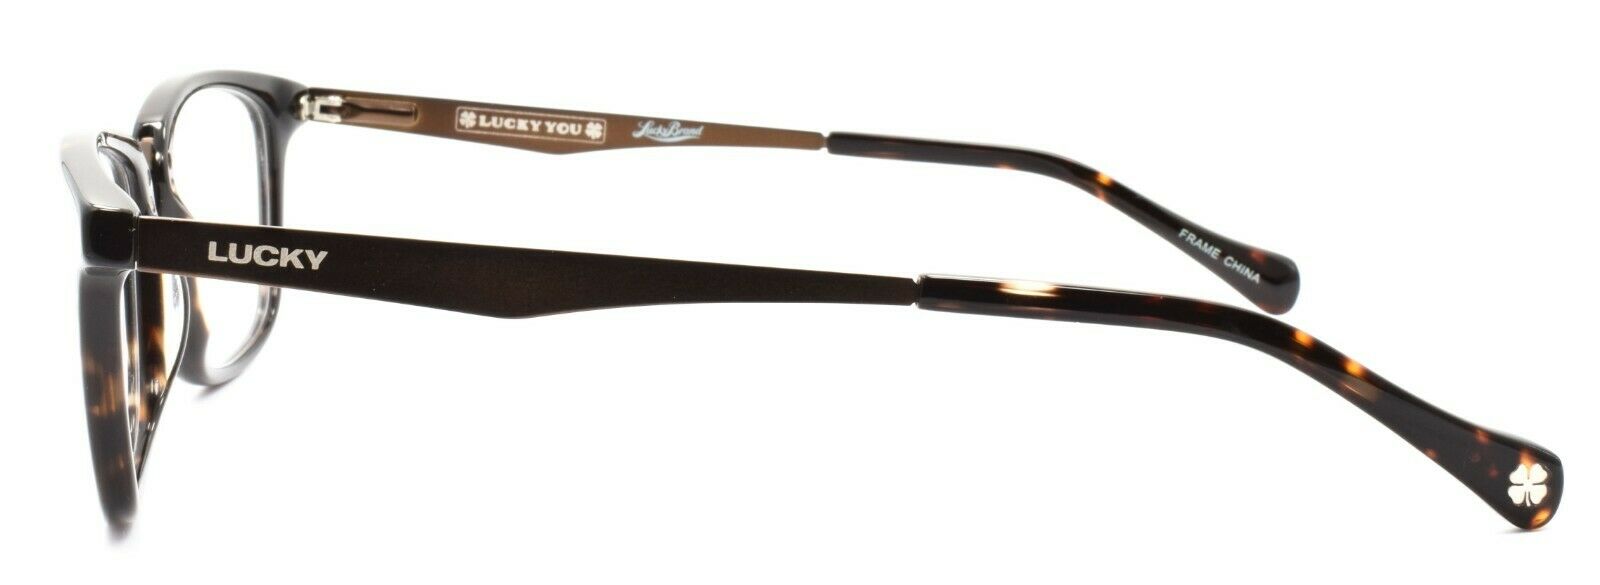 3-LUCKY BRAND D400 Men's Eyeglasses Frames 51-20-140 Tortoise + CASE-751286274004-IKSpecs